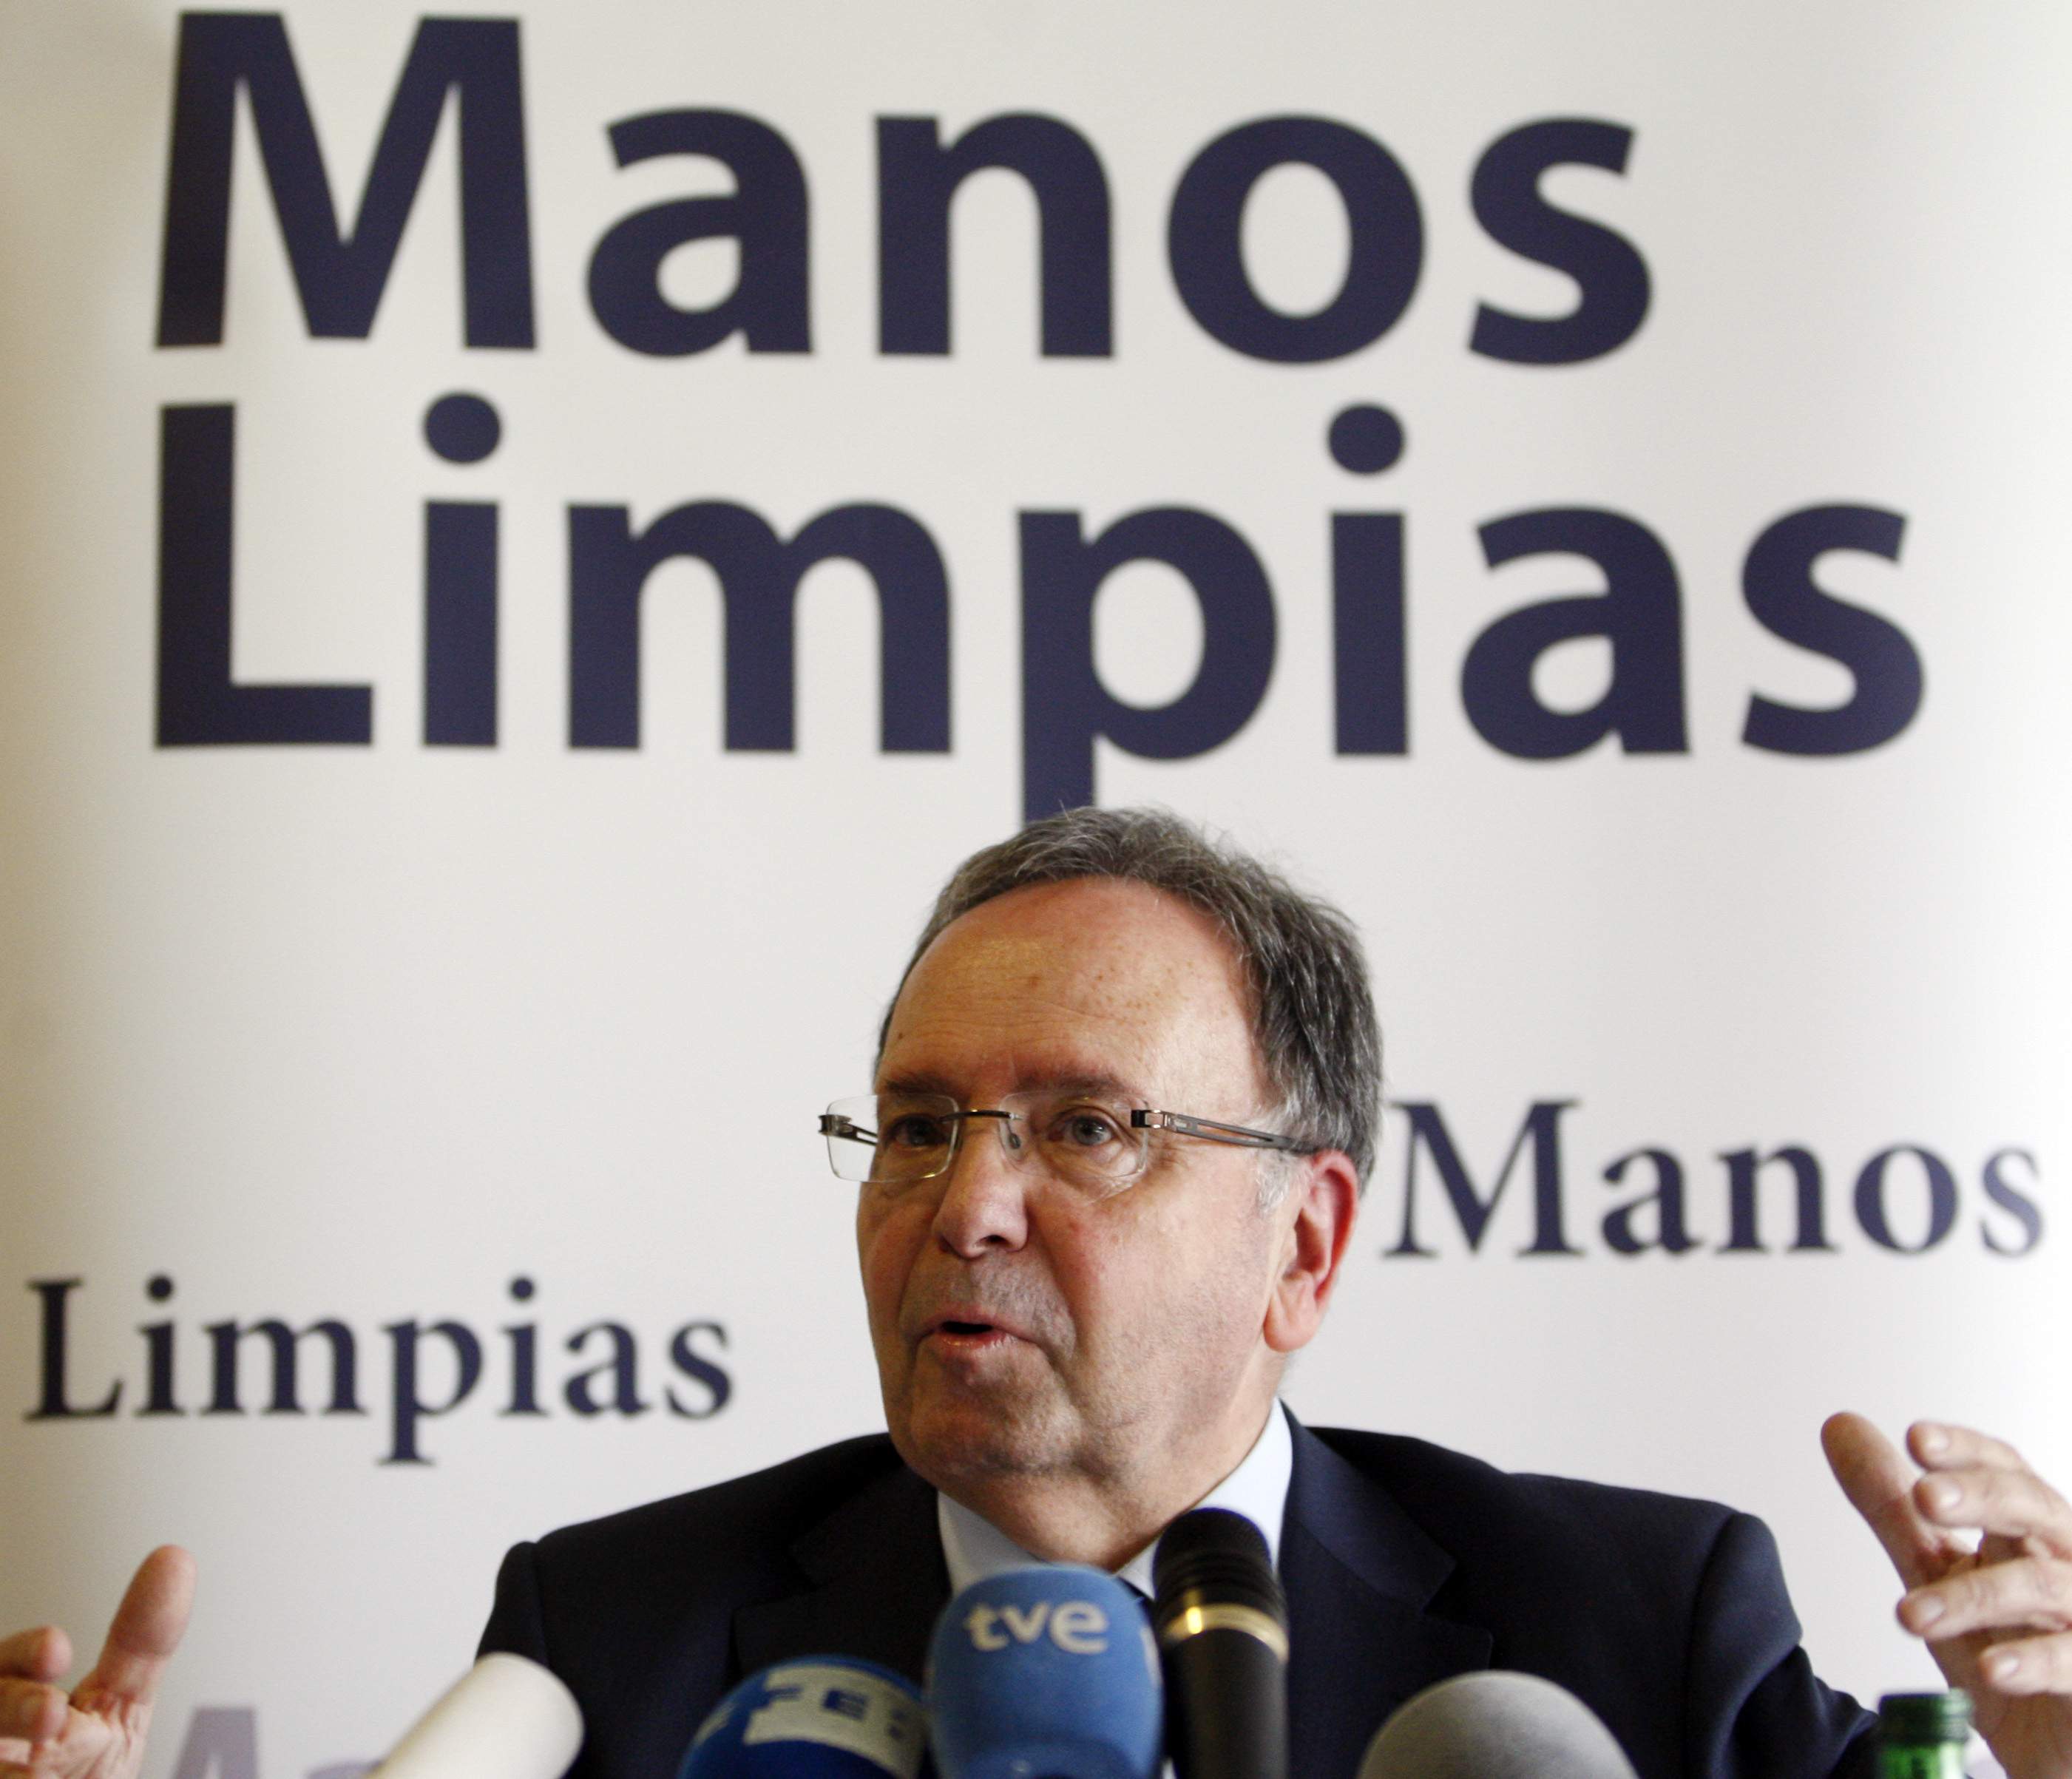 Què és Manos Limpias? El sindicat que ha perseguit l'independentisme i ara denuncia Begoña Gómez